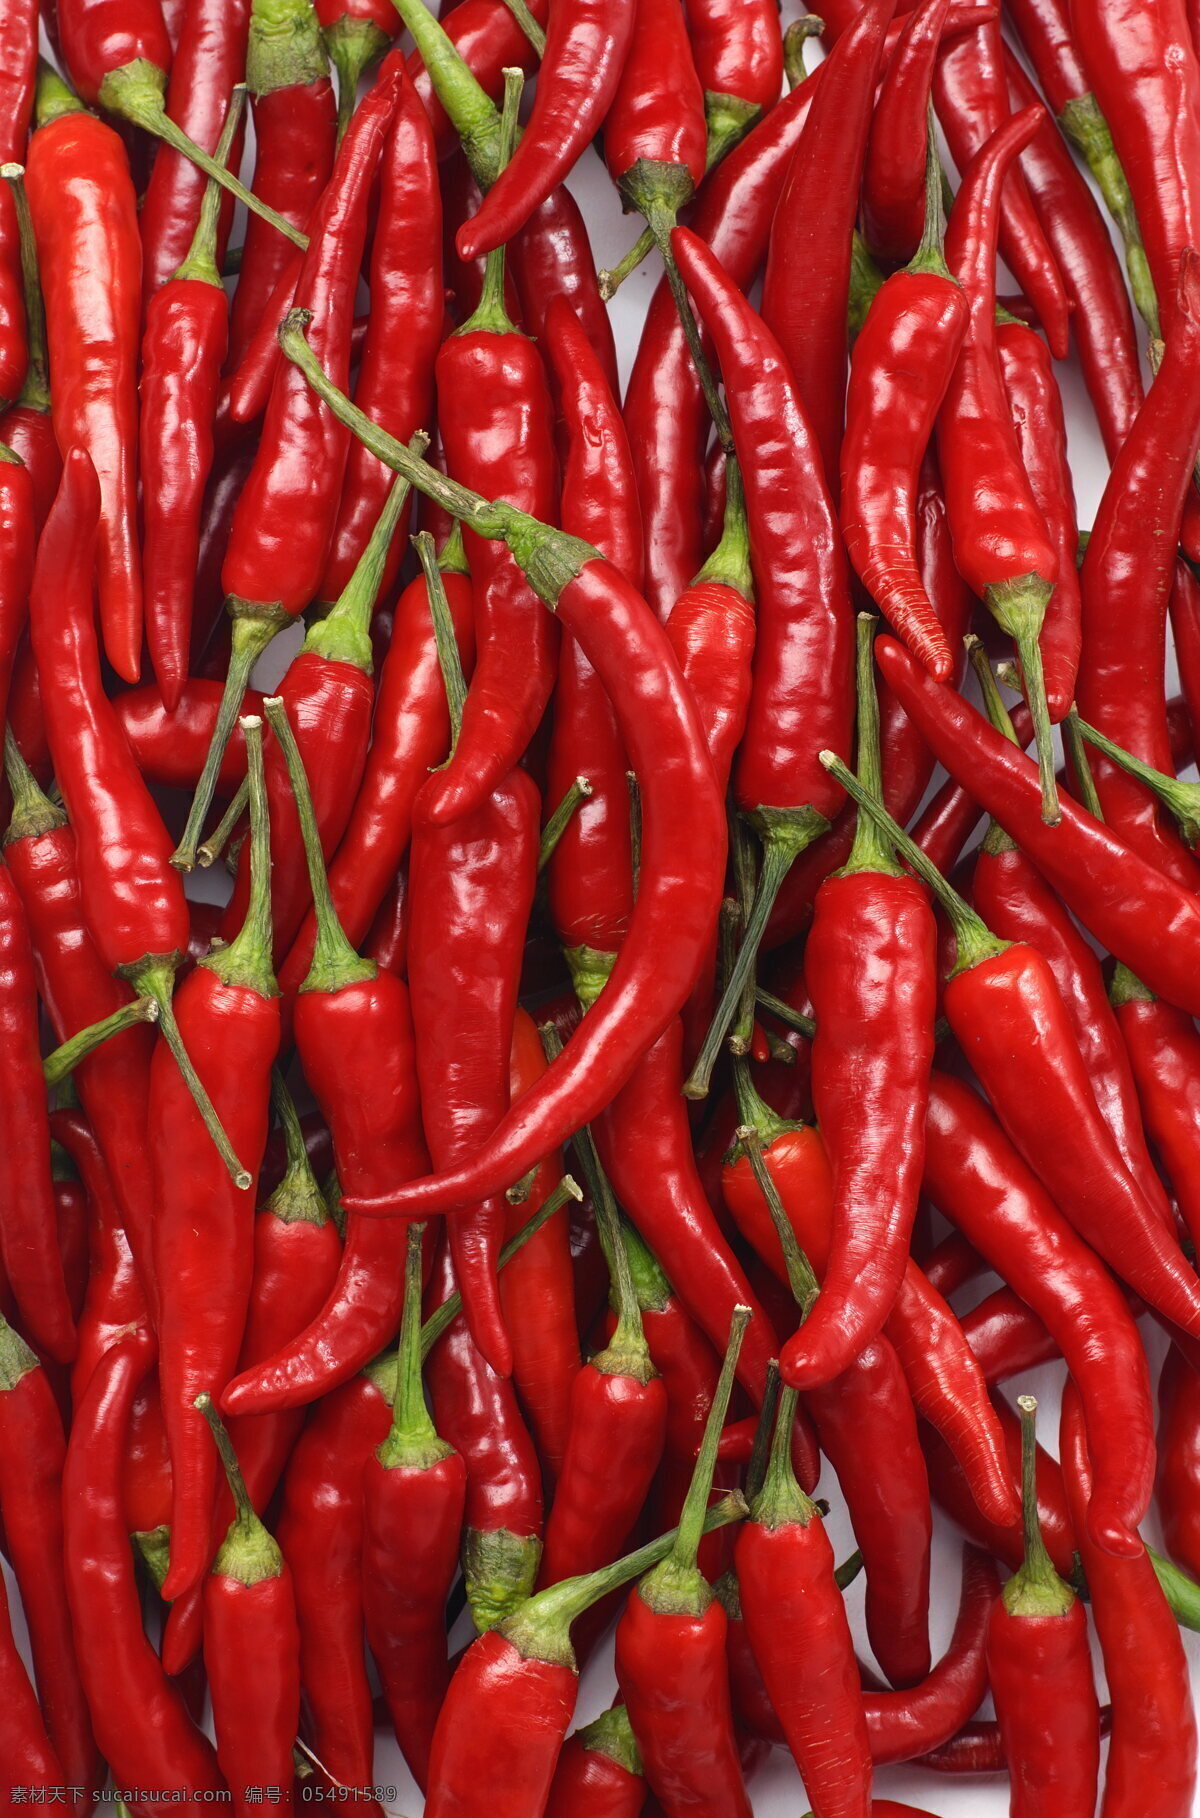 红 辣椒 新鲜蔬菜 红辣椒 摄影图 高清图片 蔬菜图片 餐饮美食